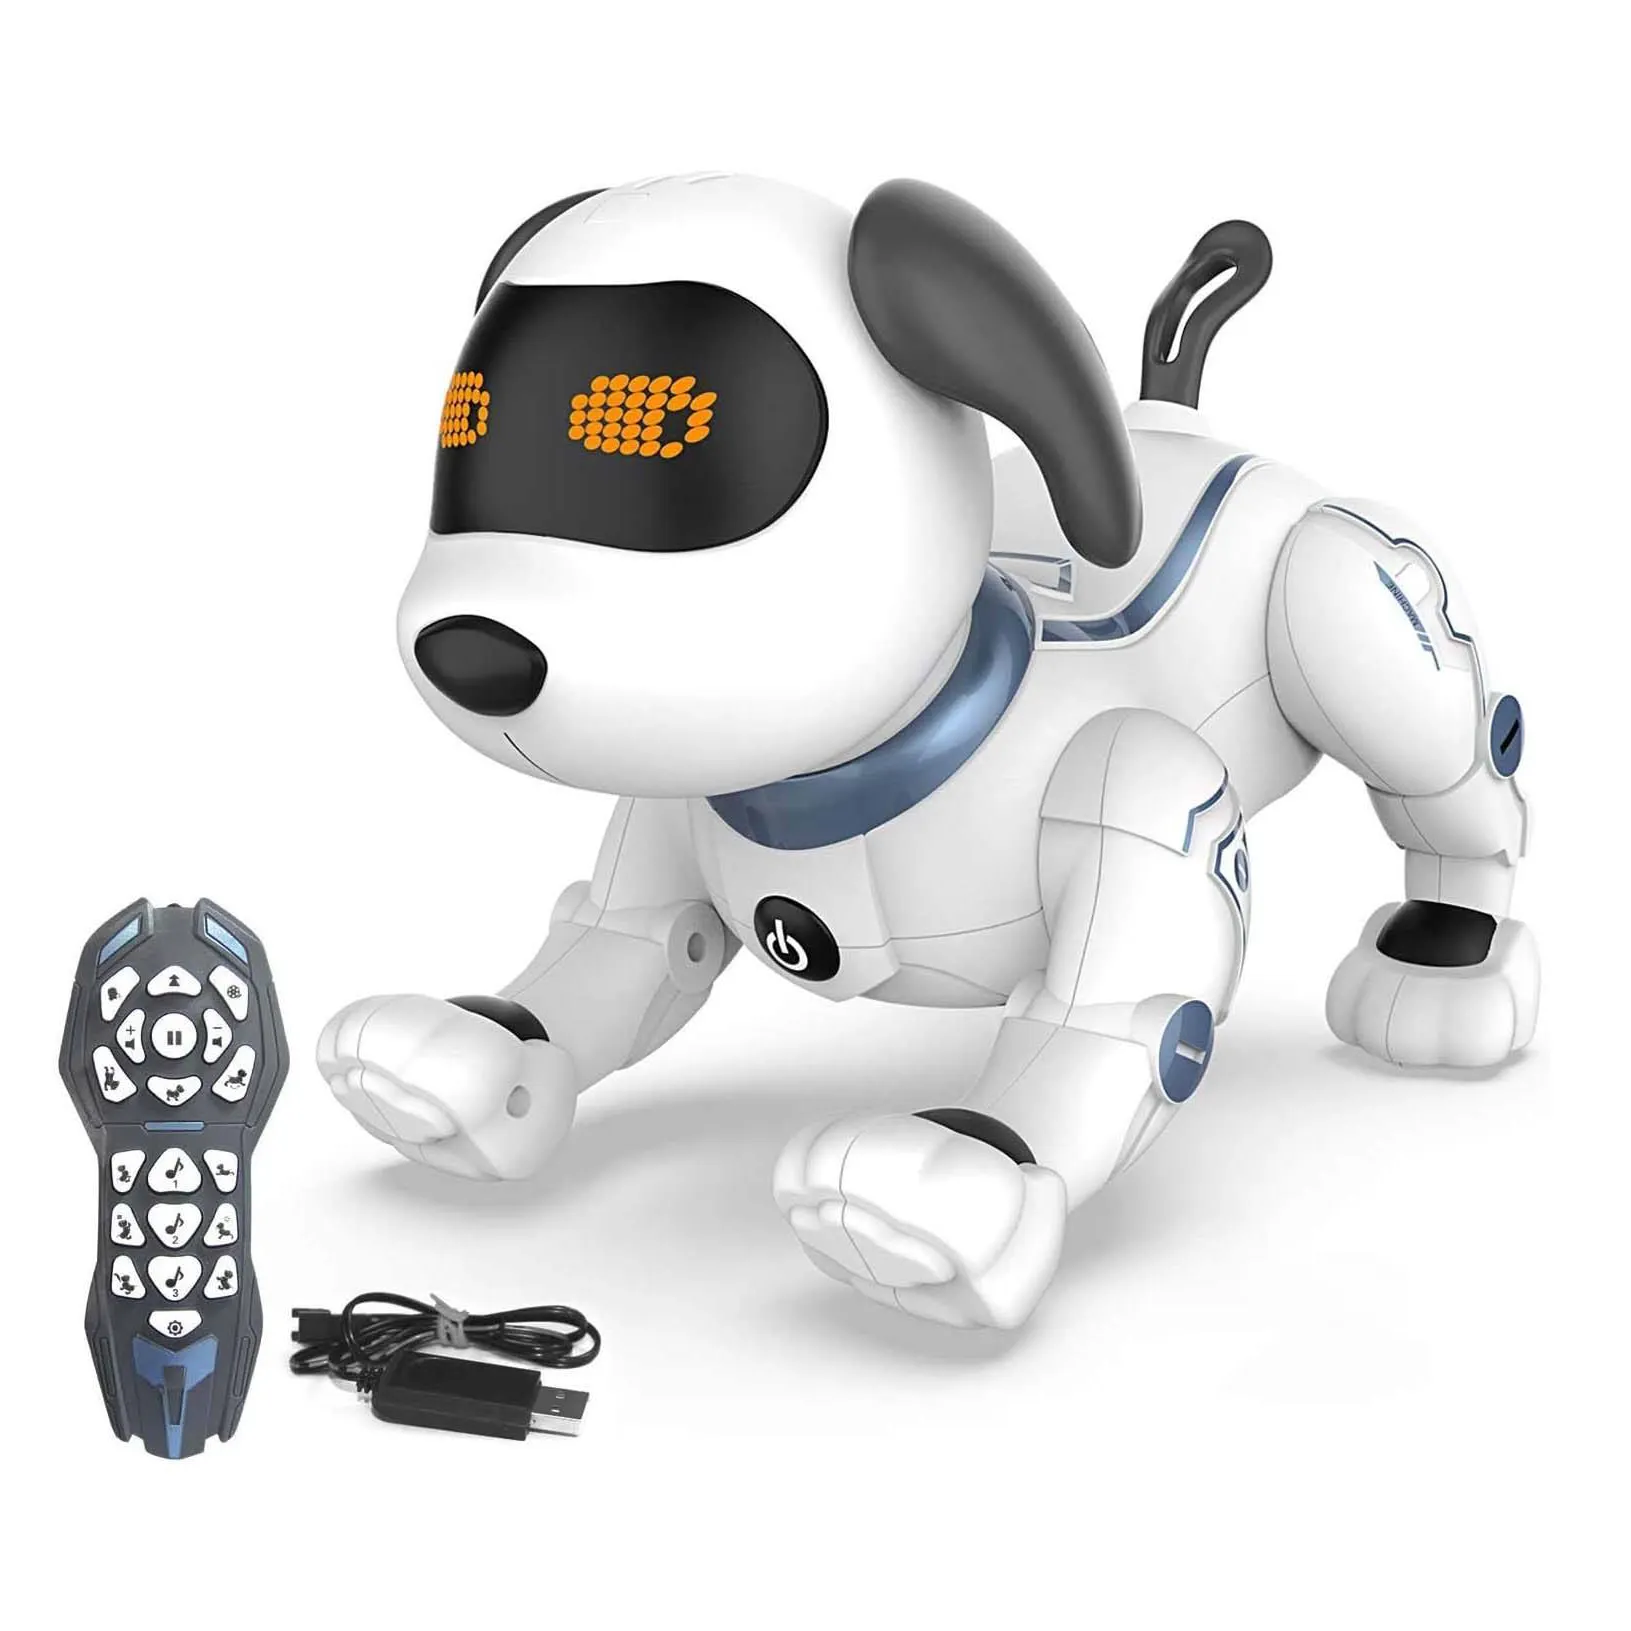 Çocuklar için uzaktan kumanda robotik köpek, RC dublör programlanabilir Robot yavru köpek oyuncaklar Sing, dans, havlar, yürüyüşler elektronik Pet köpek